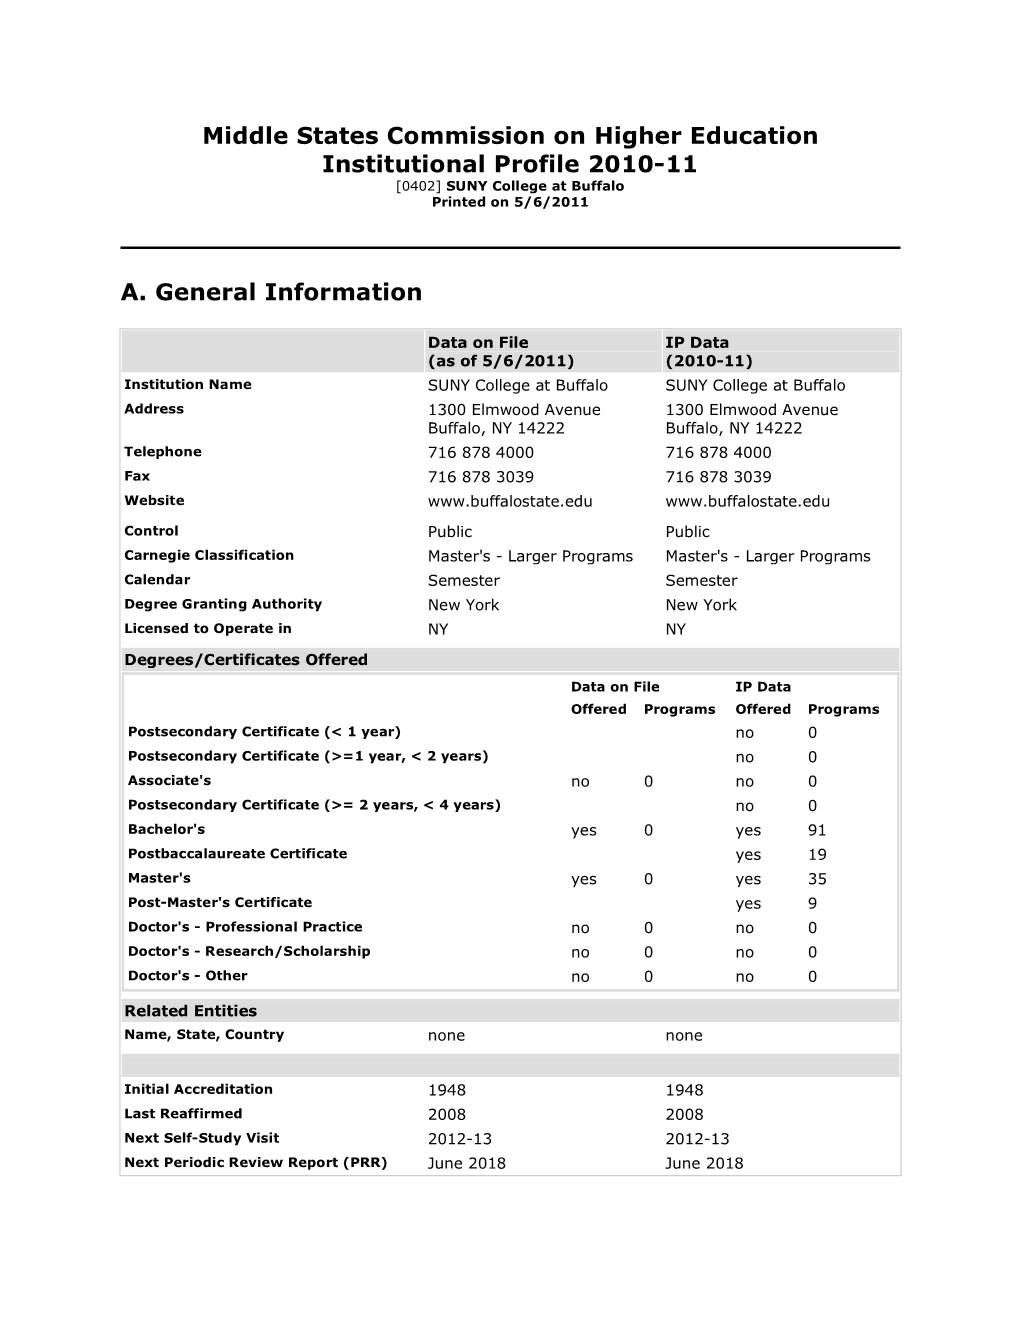 2010-2011 Institutional Profile